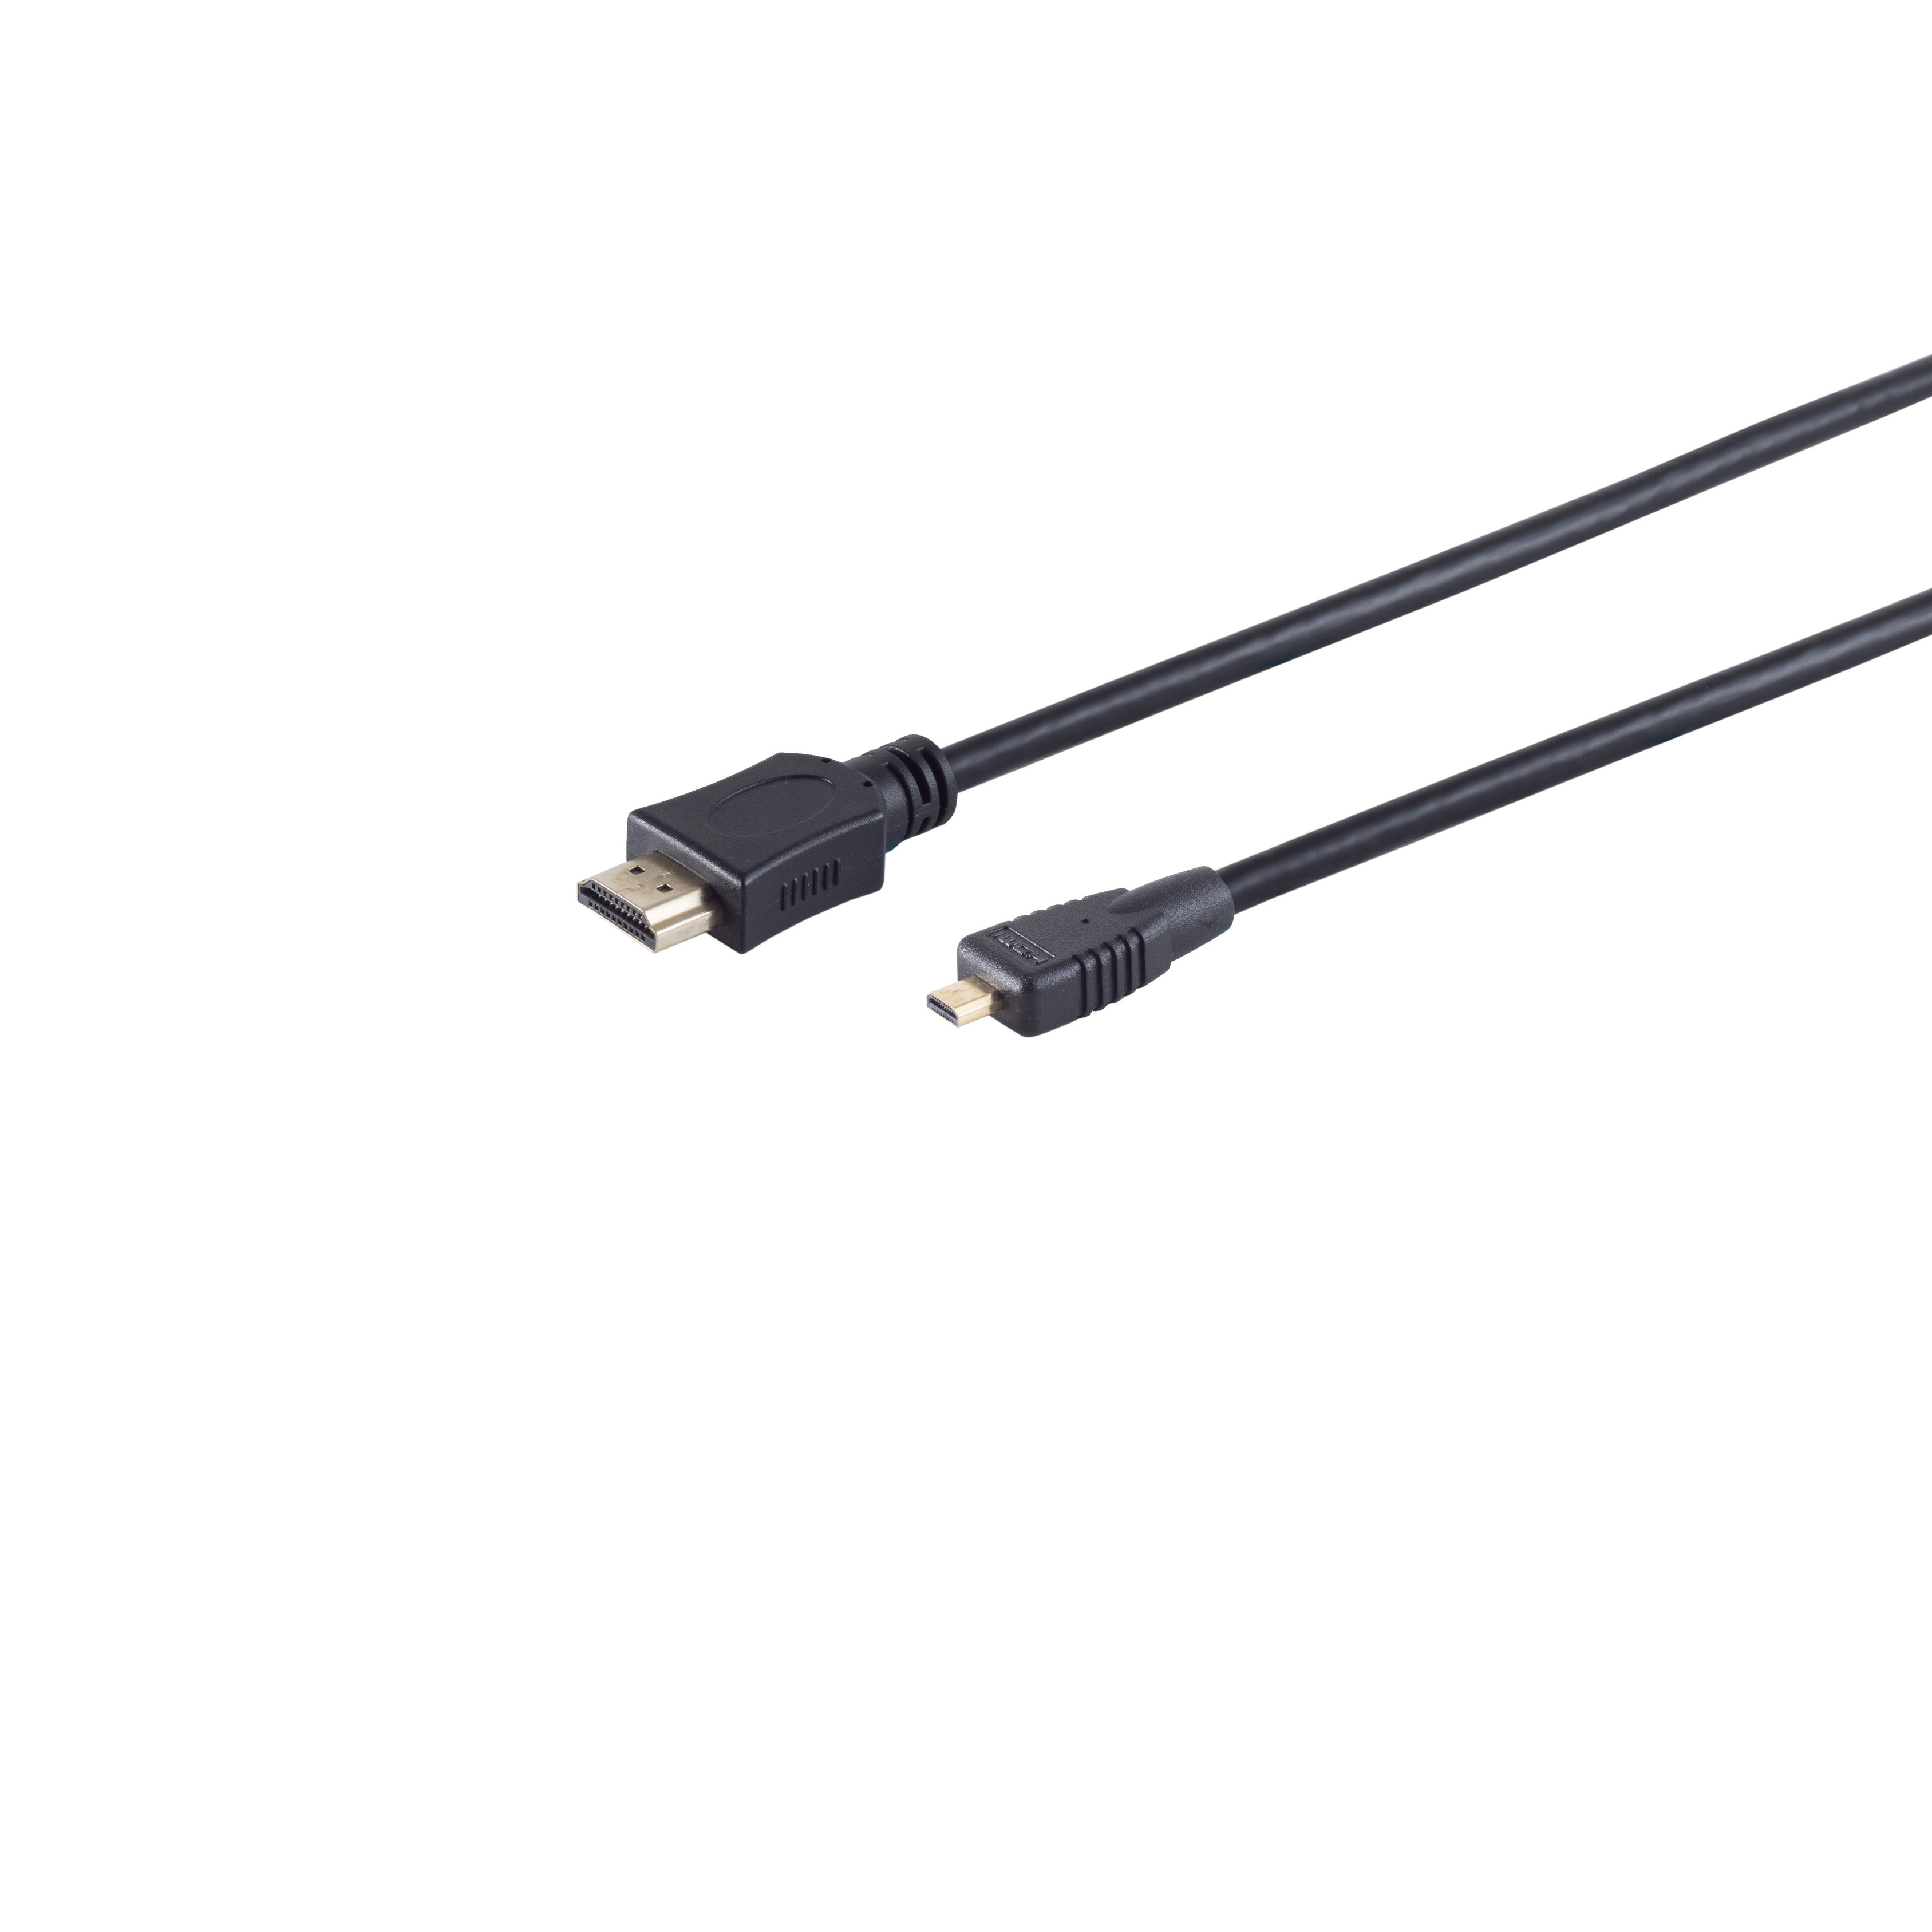 S/CONN MAXIMUM A-Stecker/HDMI micro 2m CONNECTIVITY verg D-Stecker HDMI Kabel HDMI HEAC